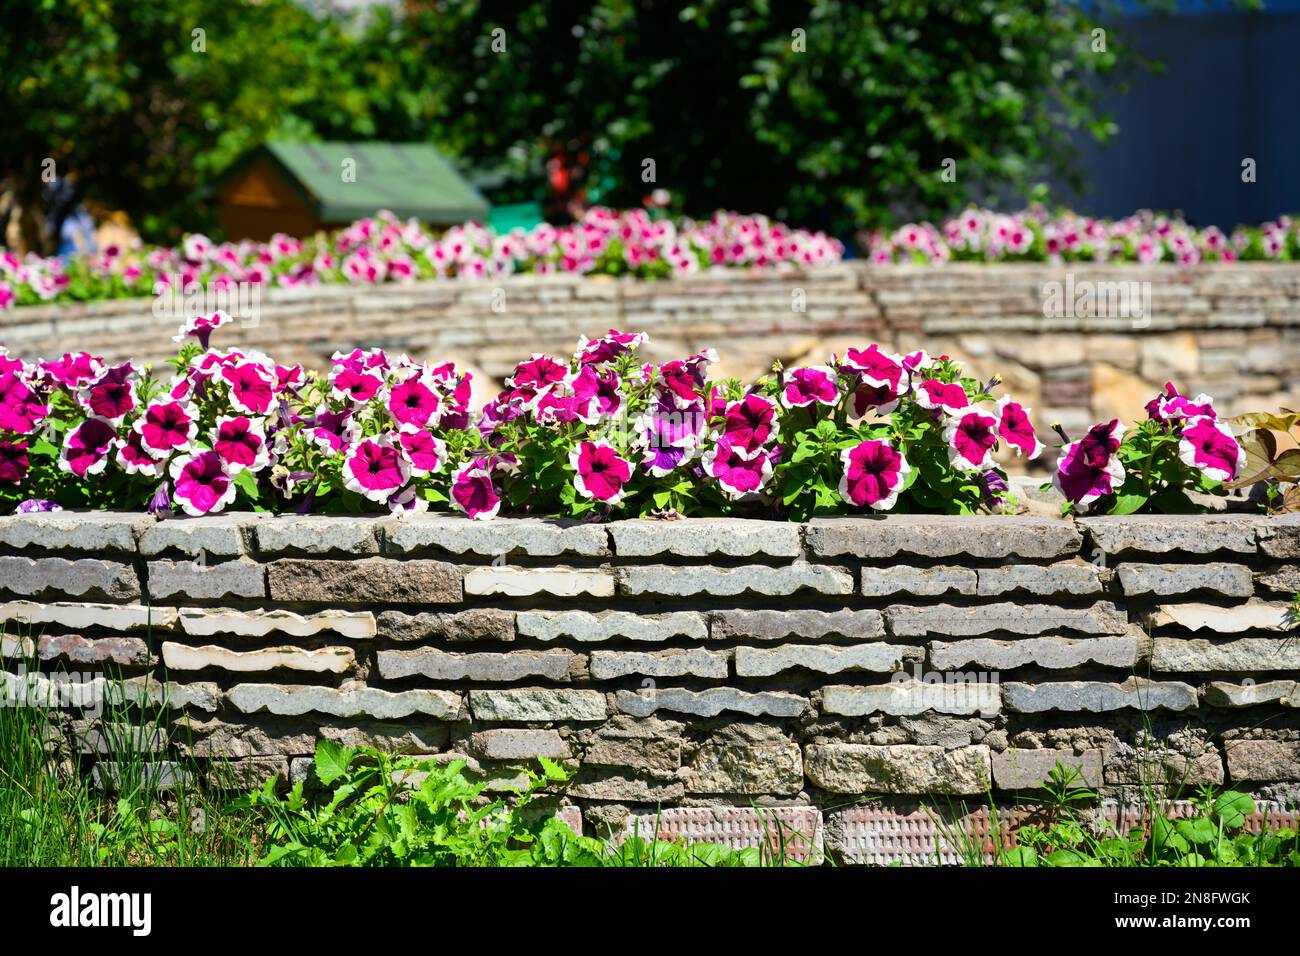 Progettazione paesaggistica di casa giardino, paesaggistica con fiori e pareti di sostegno in pietra nel cortile casa in estate. Bella pianta fiorita e rifinita Foto Stock